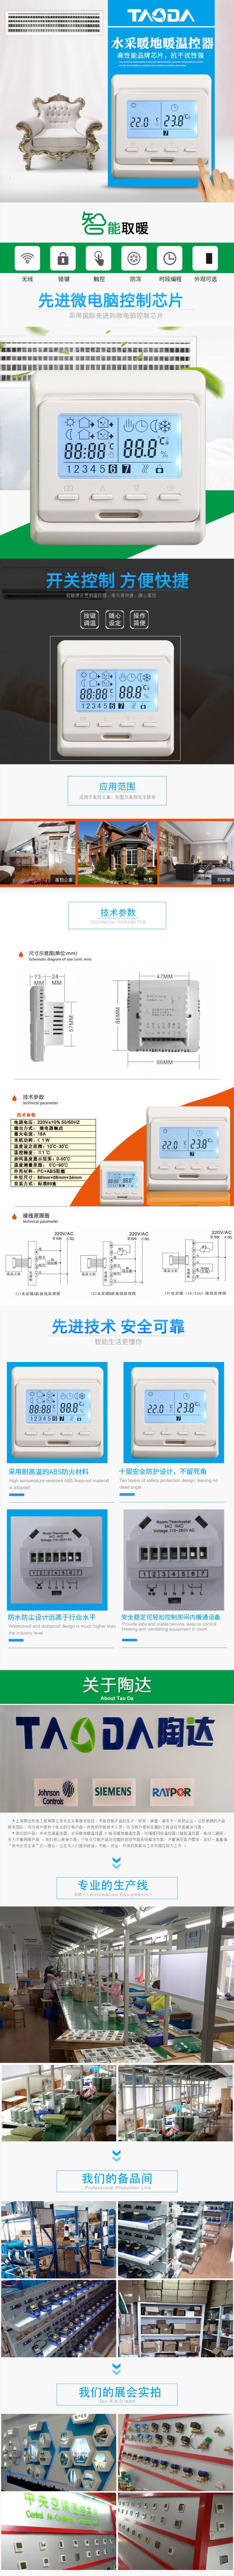 地暖温控器 周编程地暖温控器 高品质水地暖温控器 TAODA质保两年示例图2